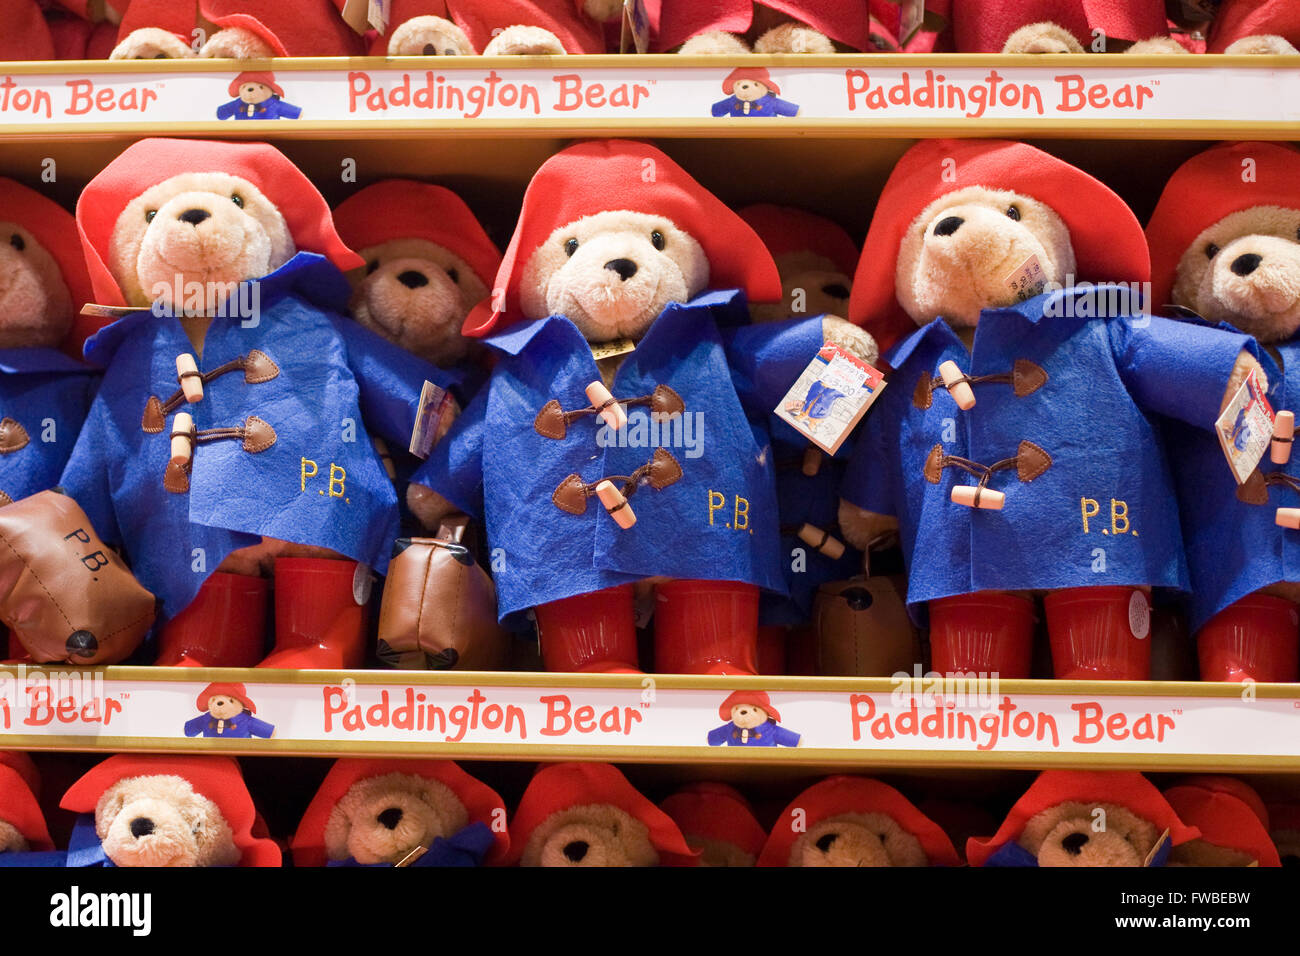 Paddington bear toy Banque de photographies et d'images à haute